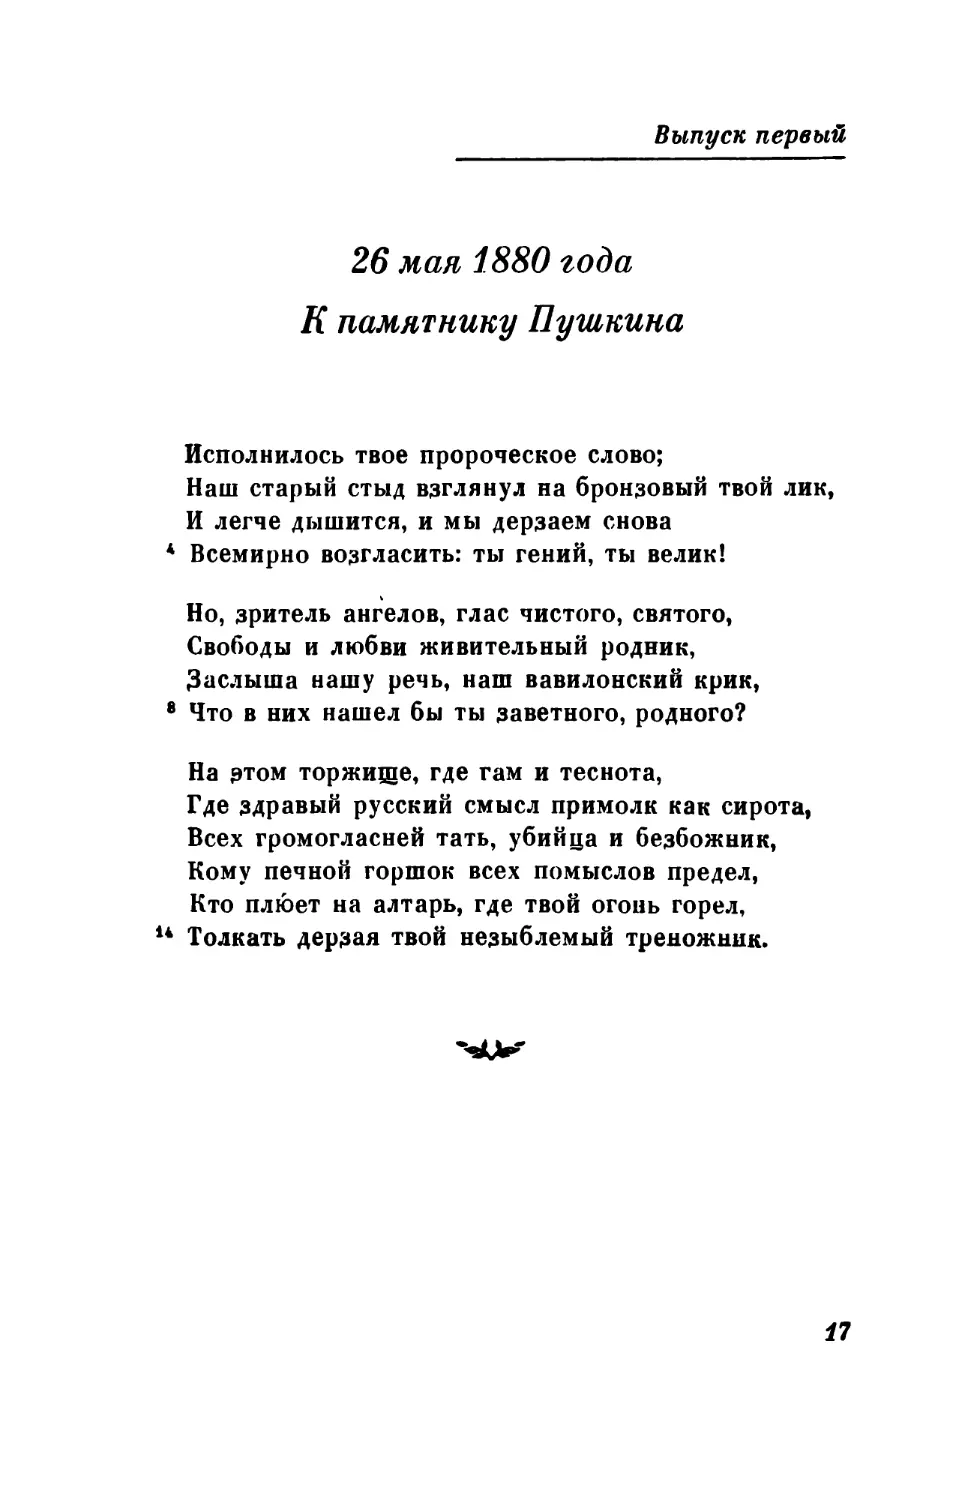 26 мая 1880 года. К памятнику Пушкина